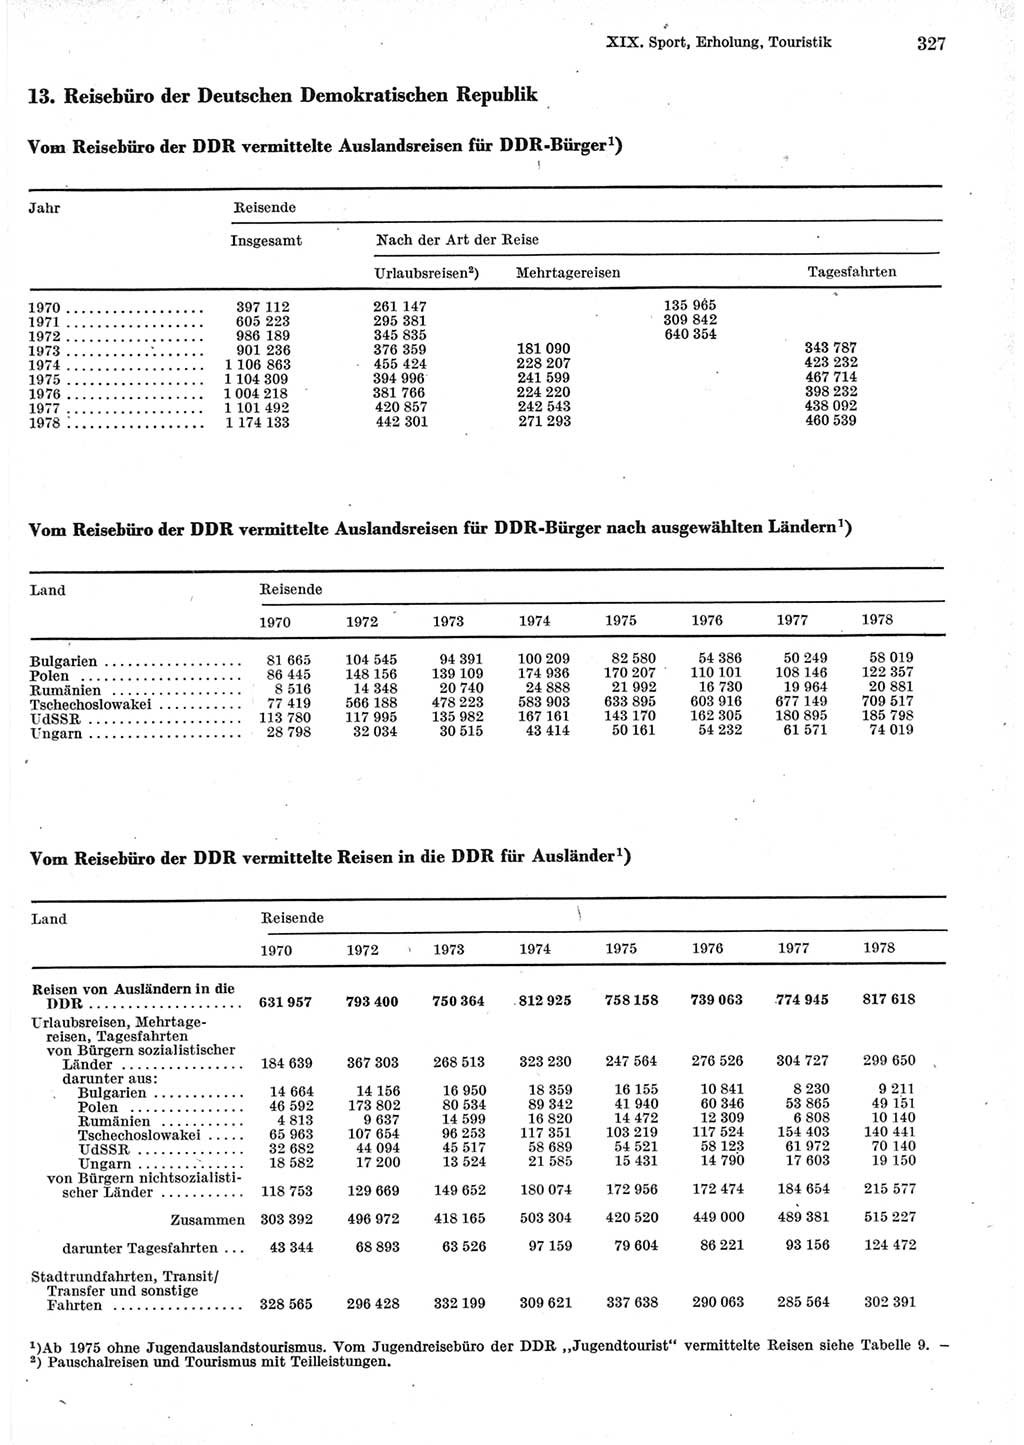 Statistisches Jahrbuch der Deutschen Demokratischen Republik (DDR) 1979, Seite 327 (Stat. Jb. DDR 1979, S. 327)